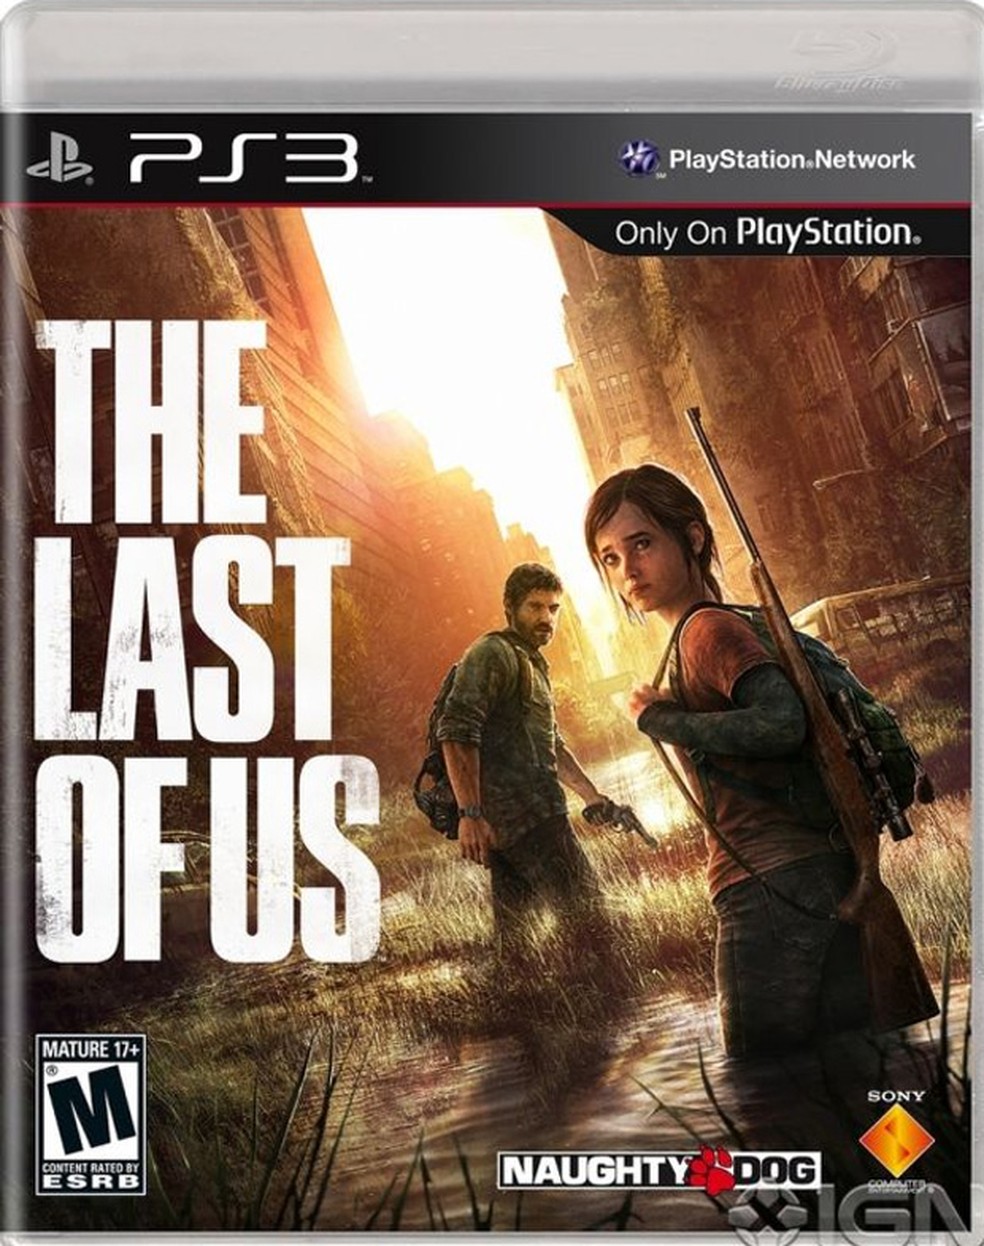 The Last of Us, aguardado jogo de PS3, chega às lojas; veja os lançamentos